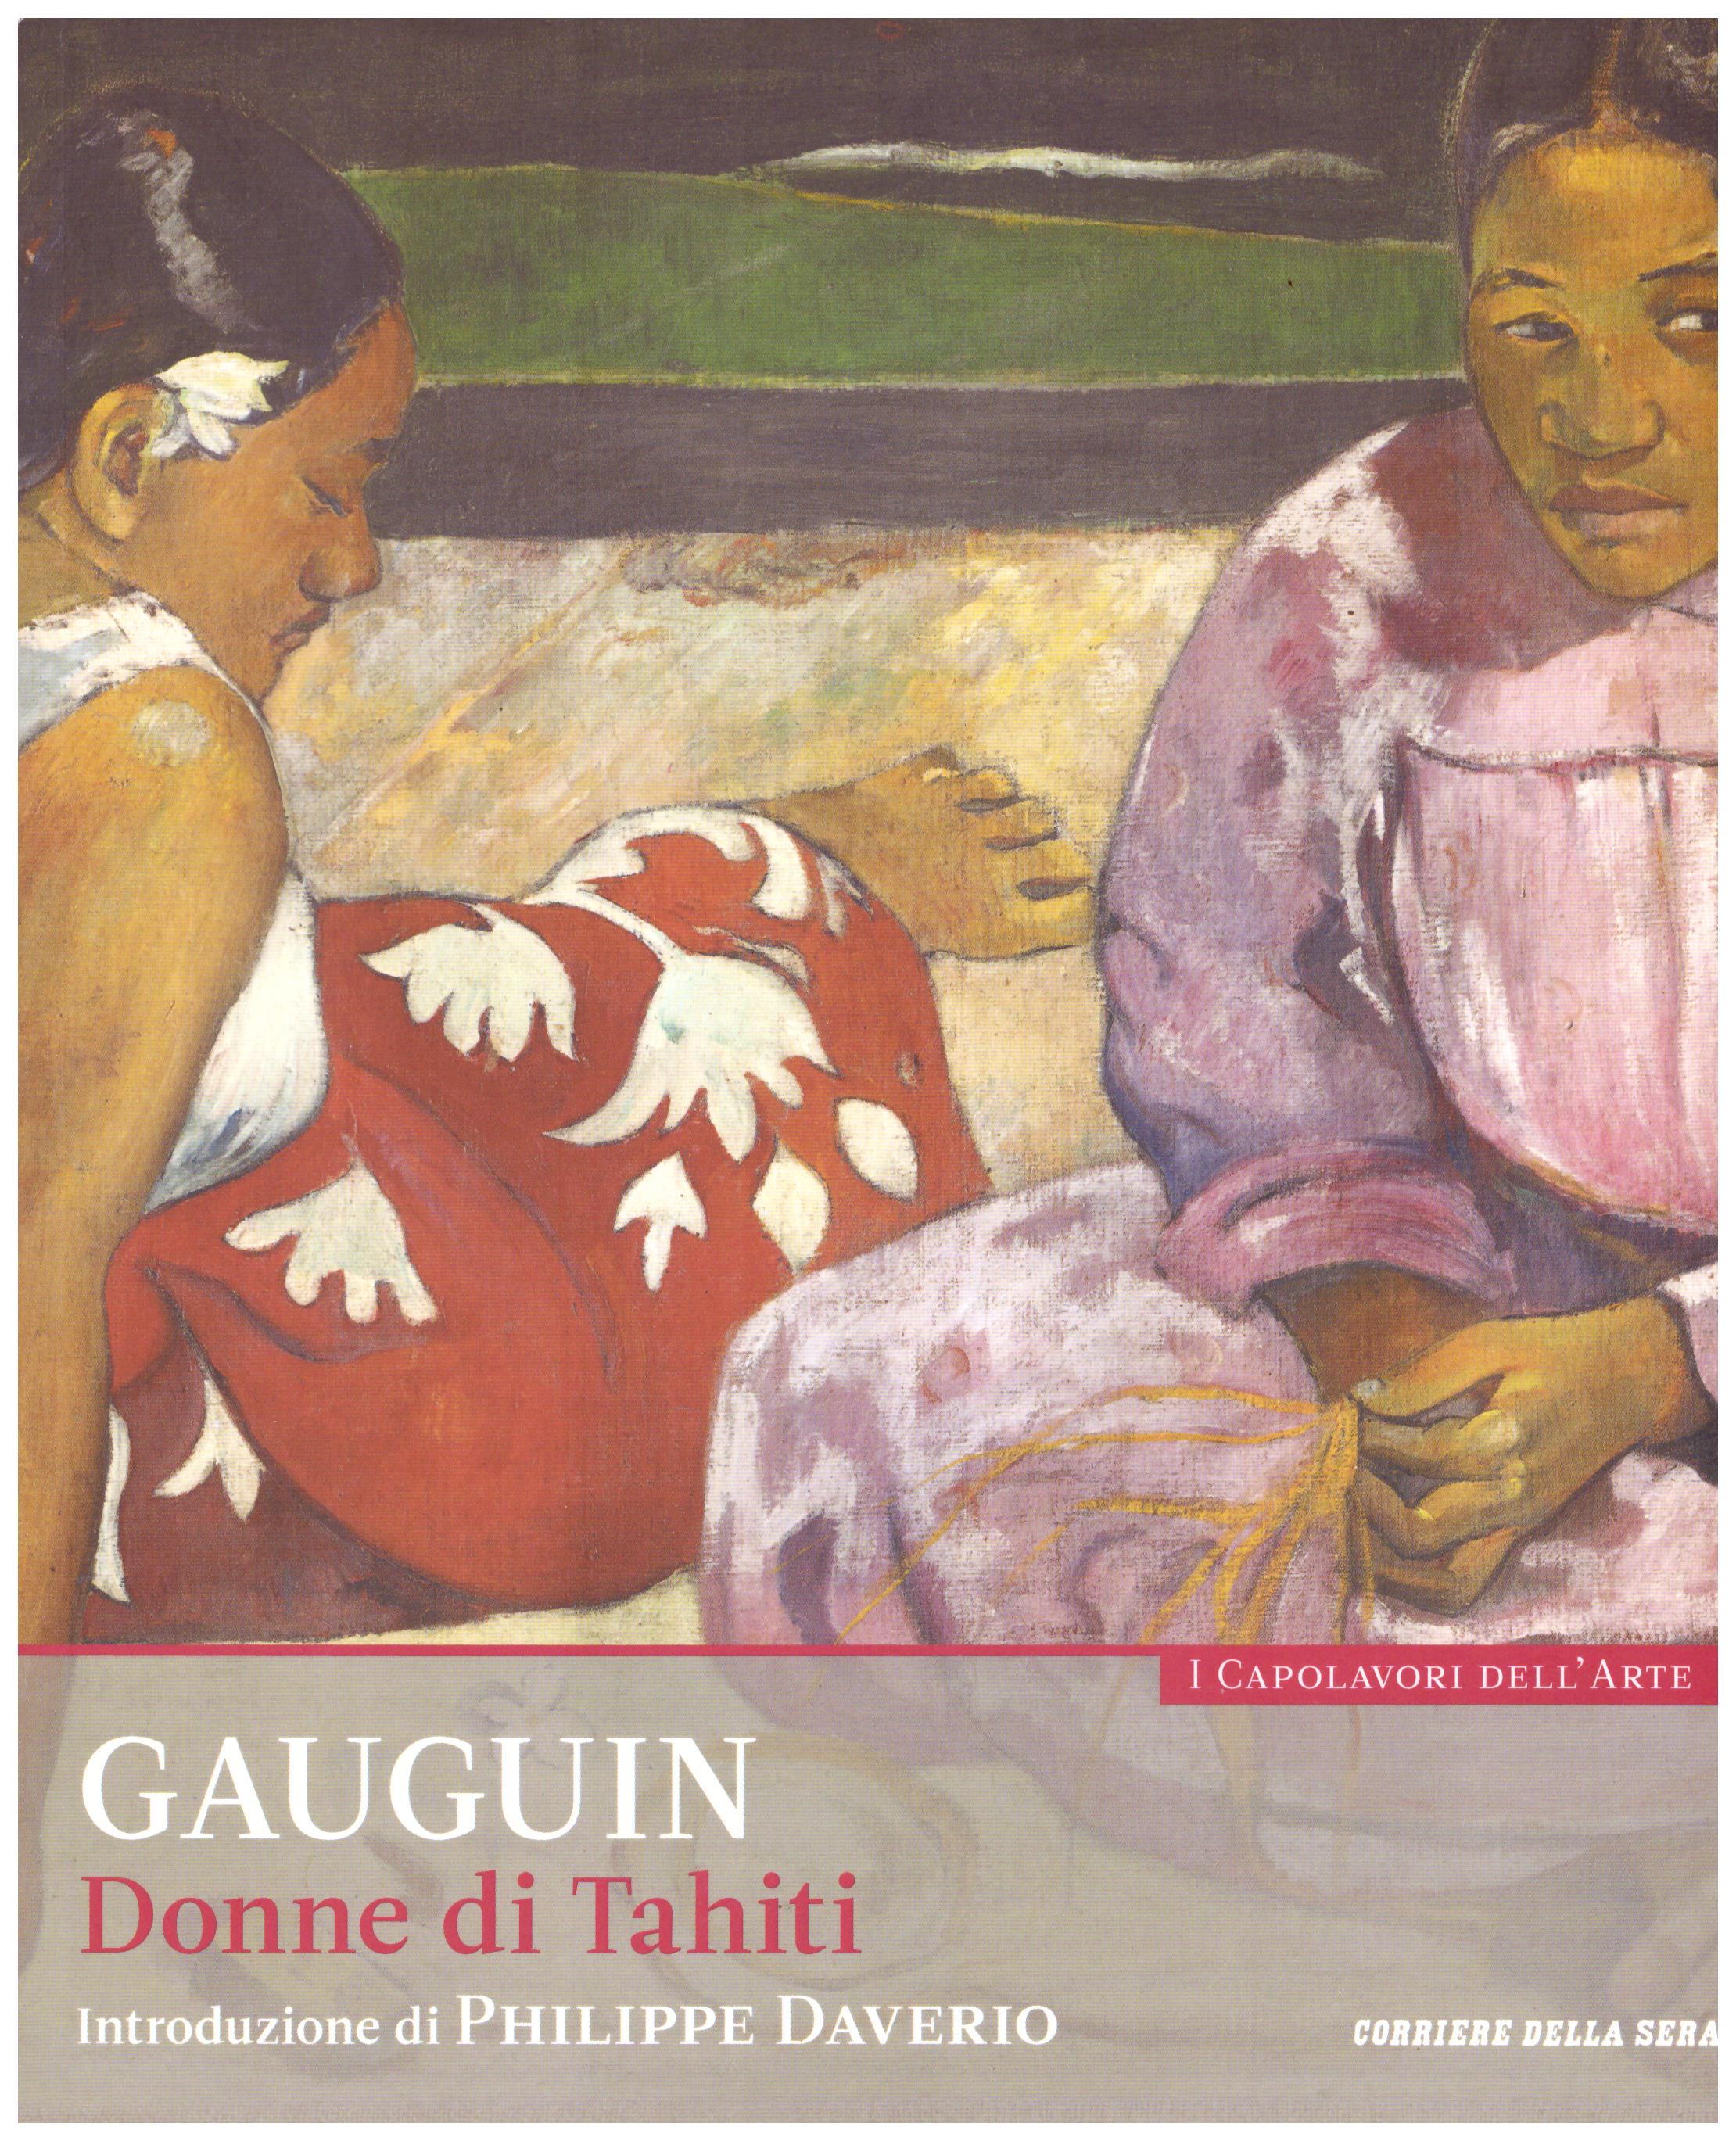 Titolo: I capolavori dell'arte, Gauguin n.11  Autore : AA.VV.   Editore: education,it/corriere della sera, 2015